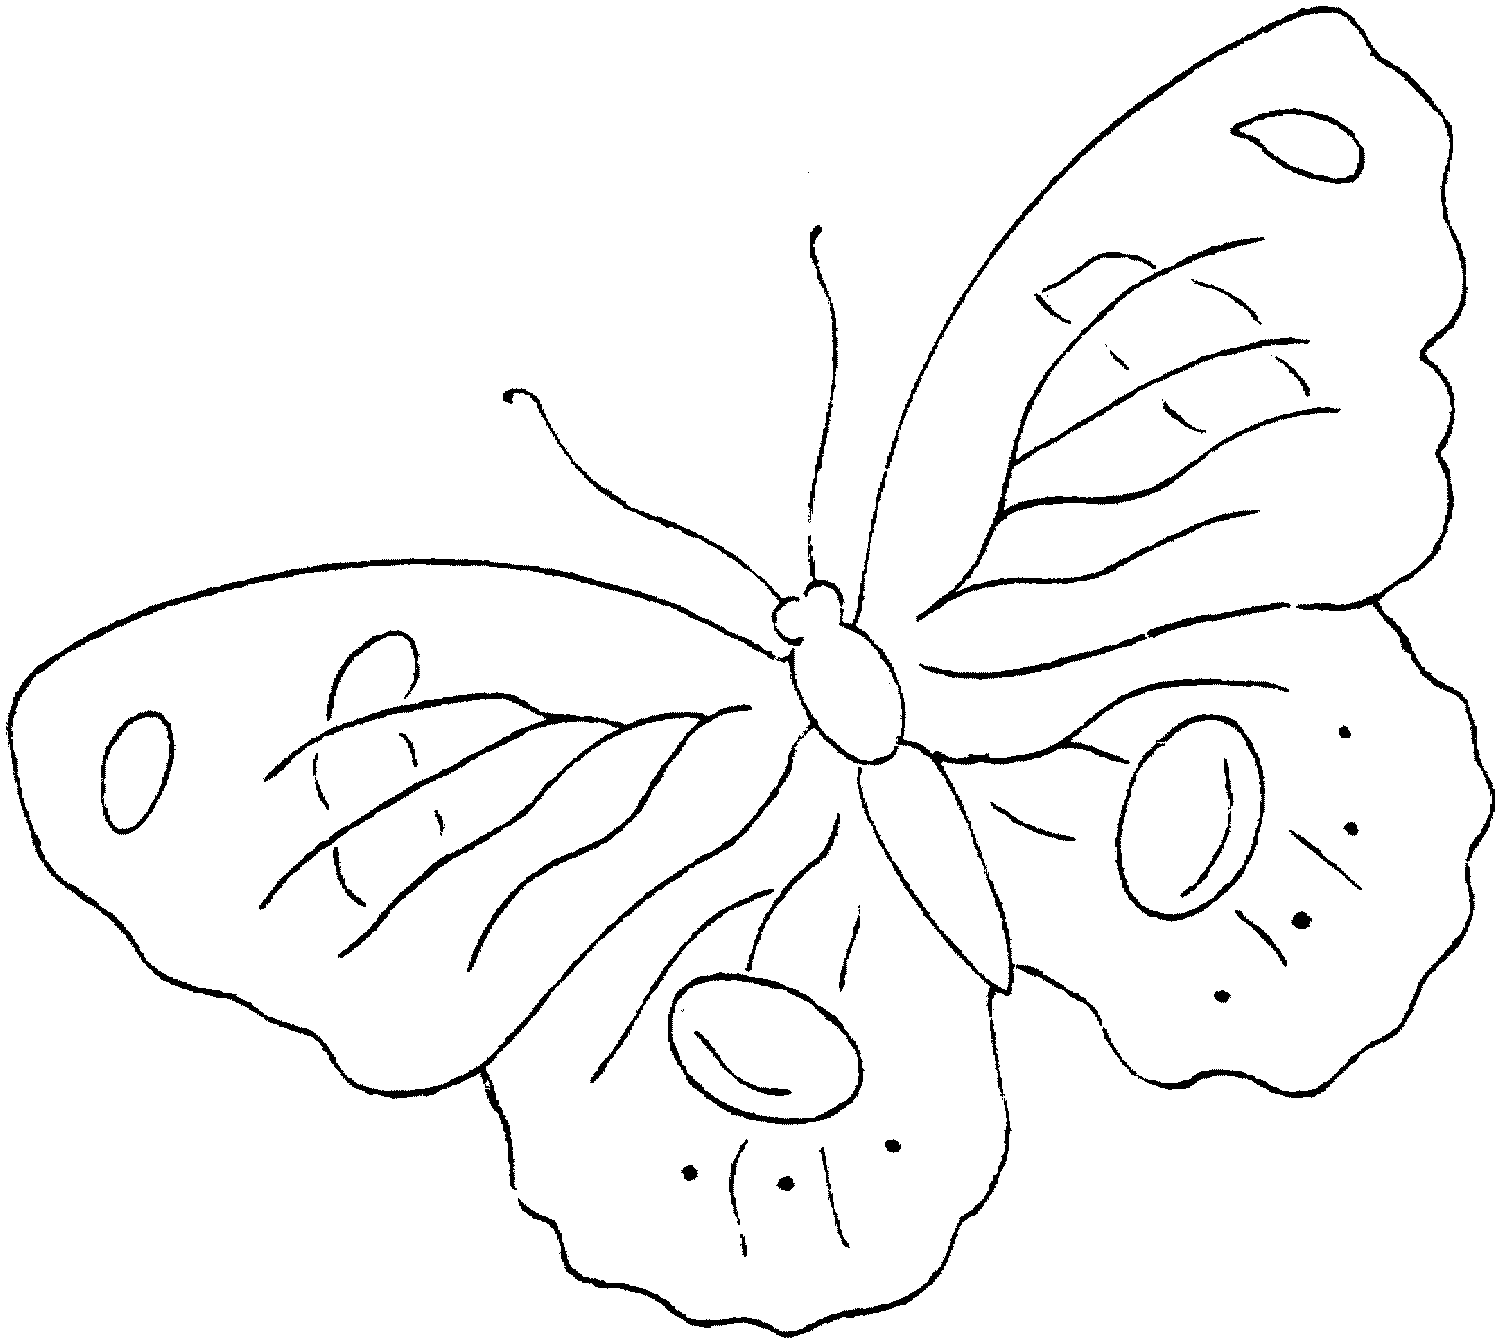 diseno de mariposas para pintar